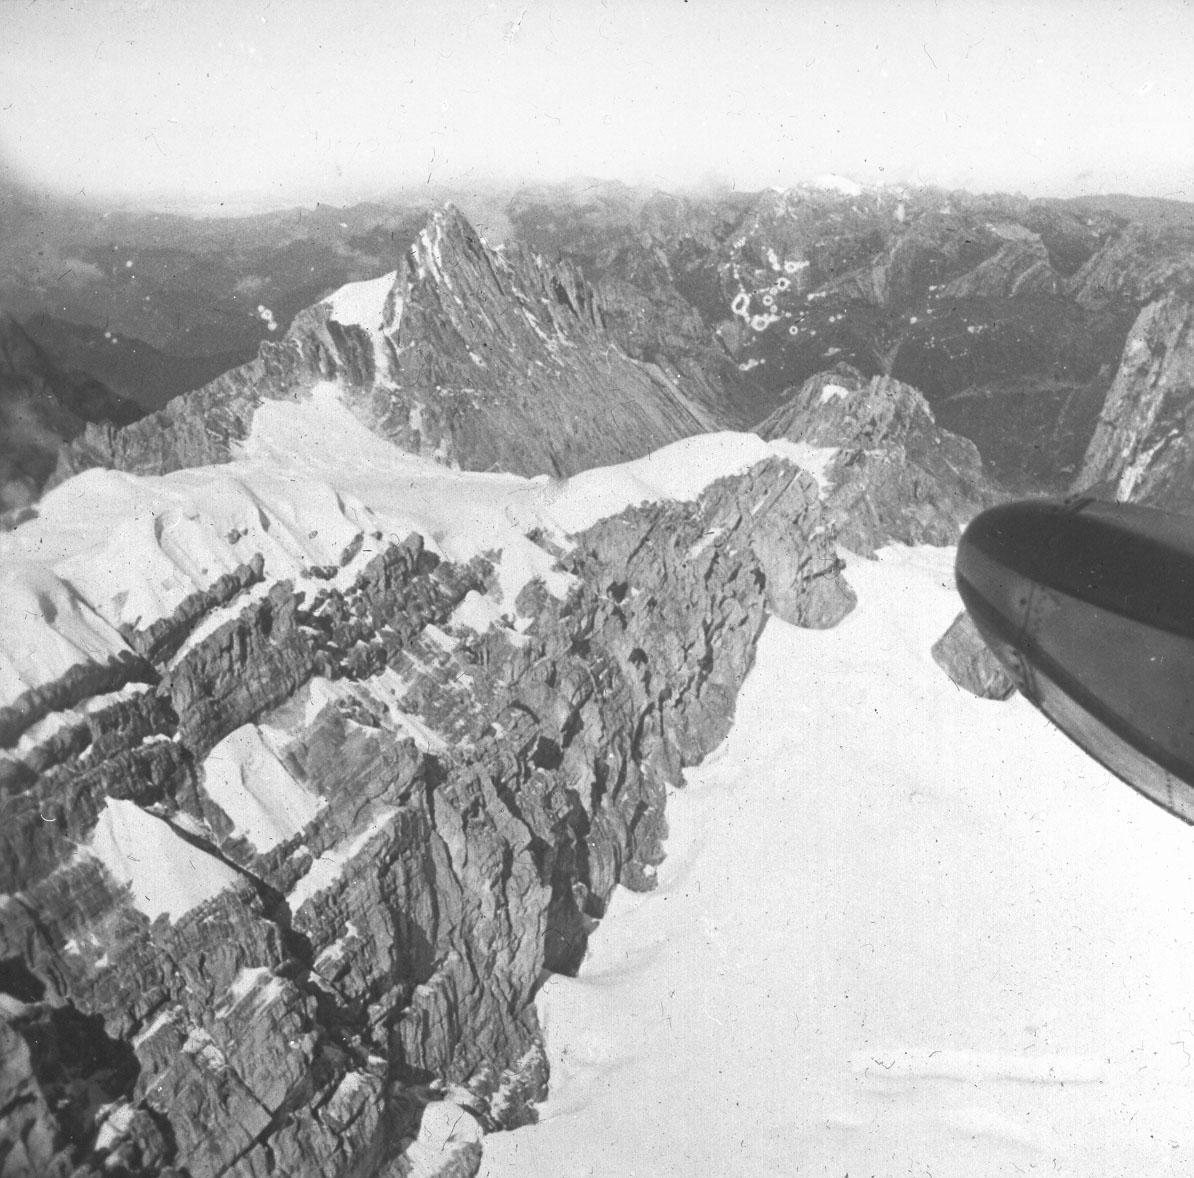 BD/66/276 - 
Verkenningstochten boven Carstensz-toppen
